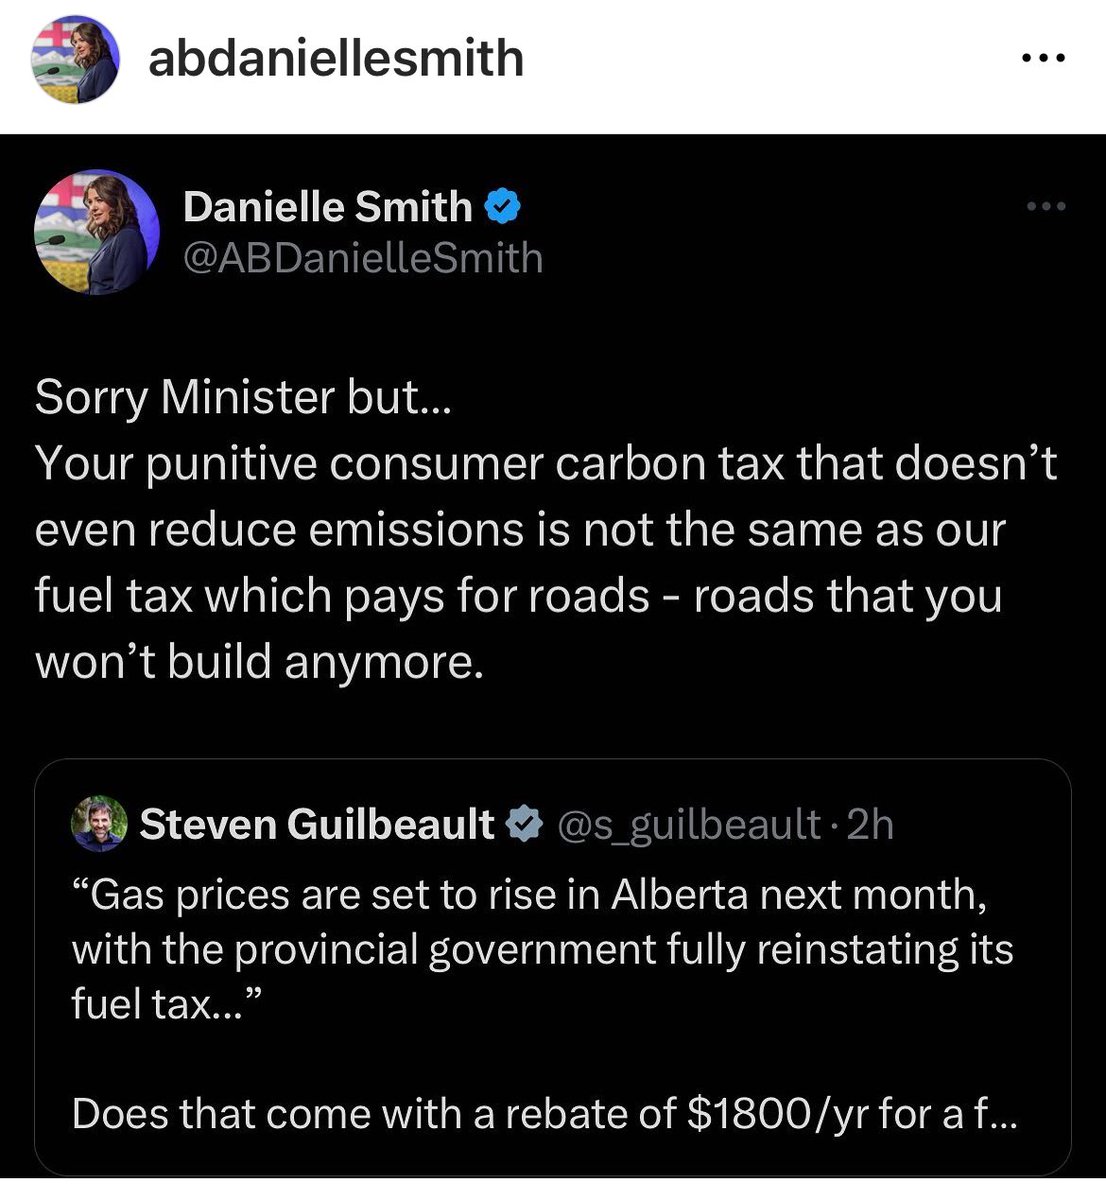 @stevenguilbeault is a liar
#FuckTrudeau